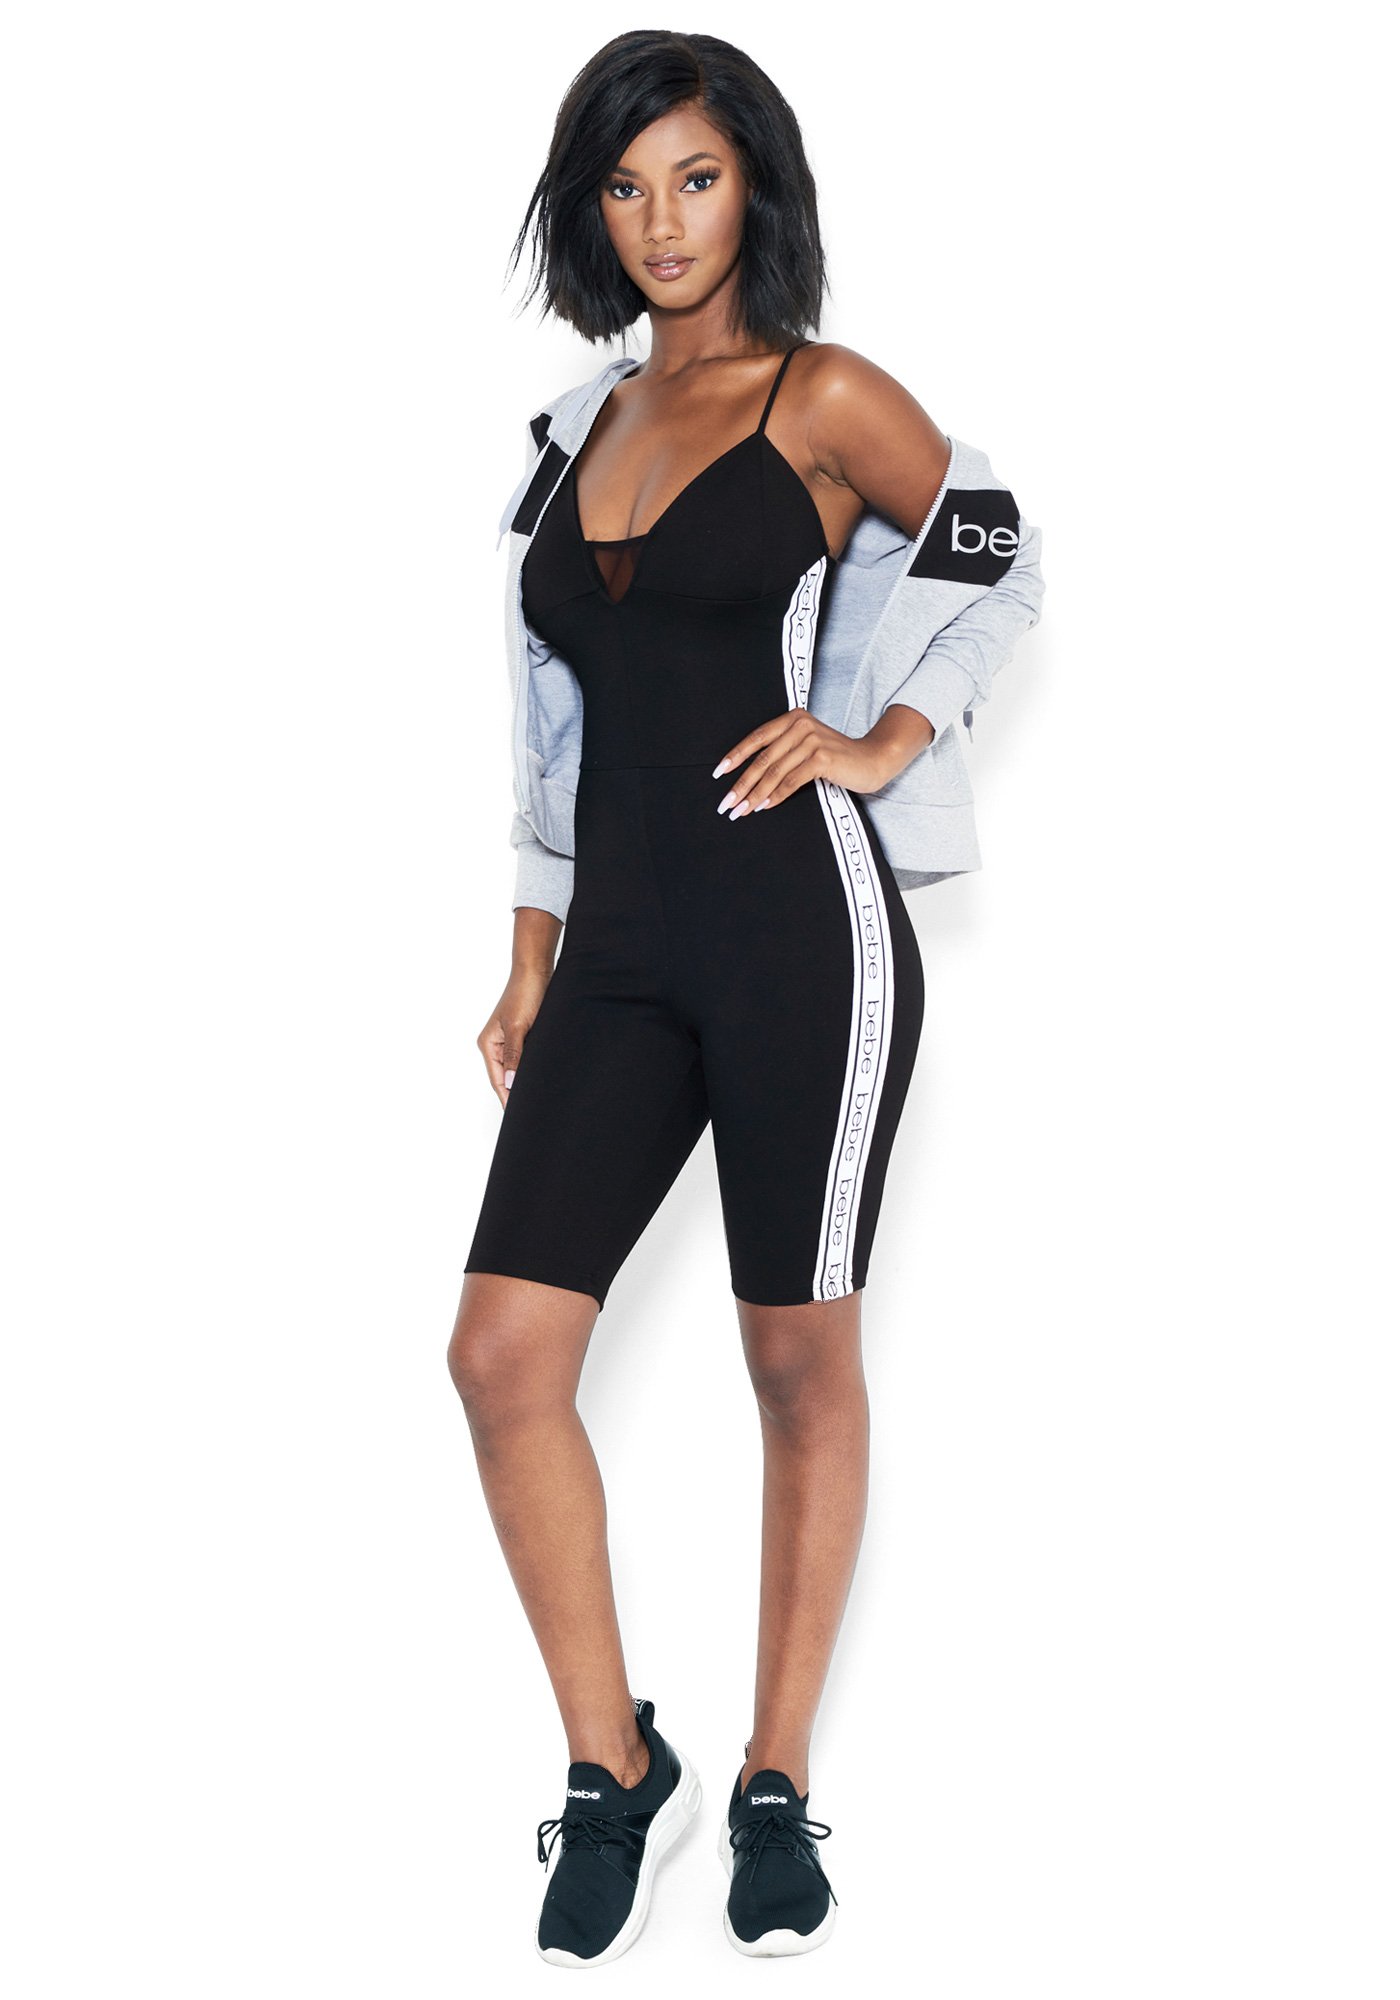 Women's Bebe Logo Bodycon Plunge Romper, Size Medium in BLACK Spandex/Nylon